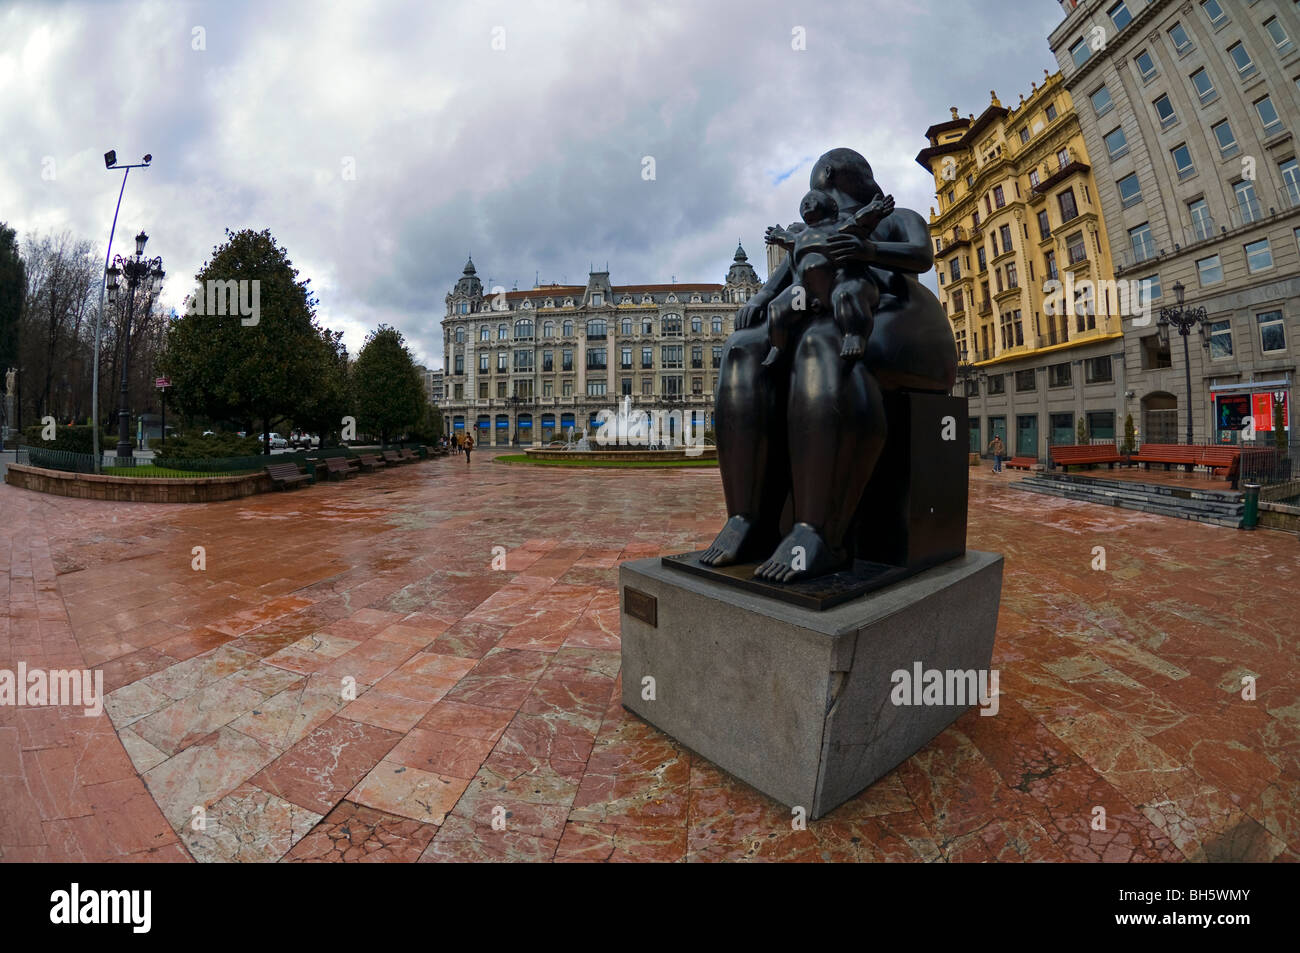 Square in the city of Oviedo, Asturias, Spain. Stock Photo